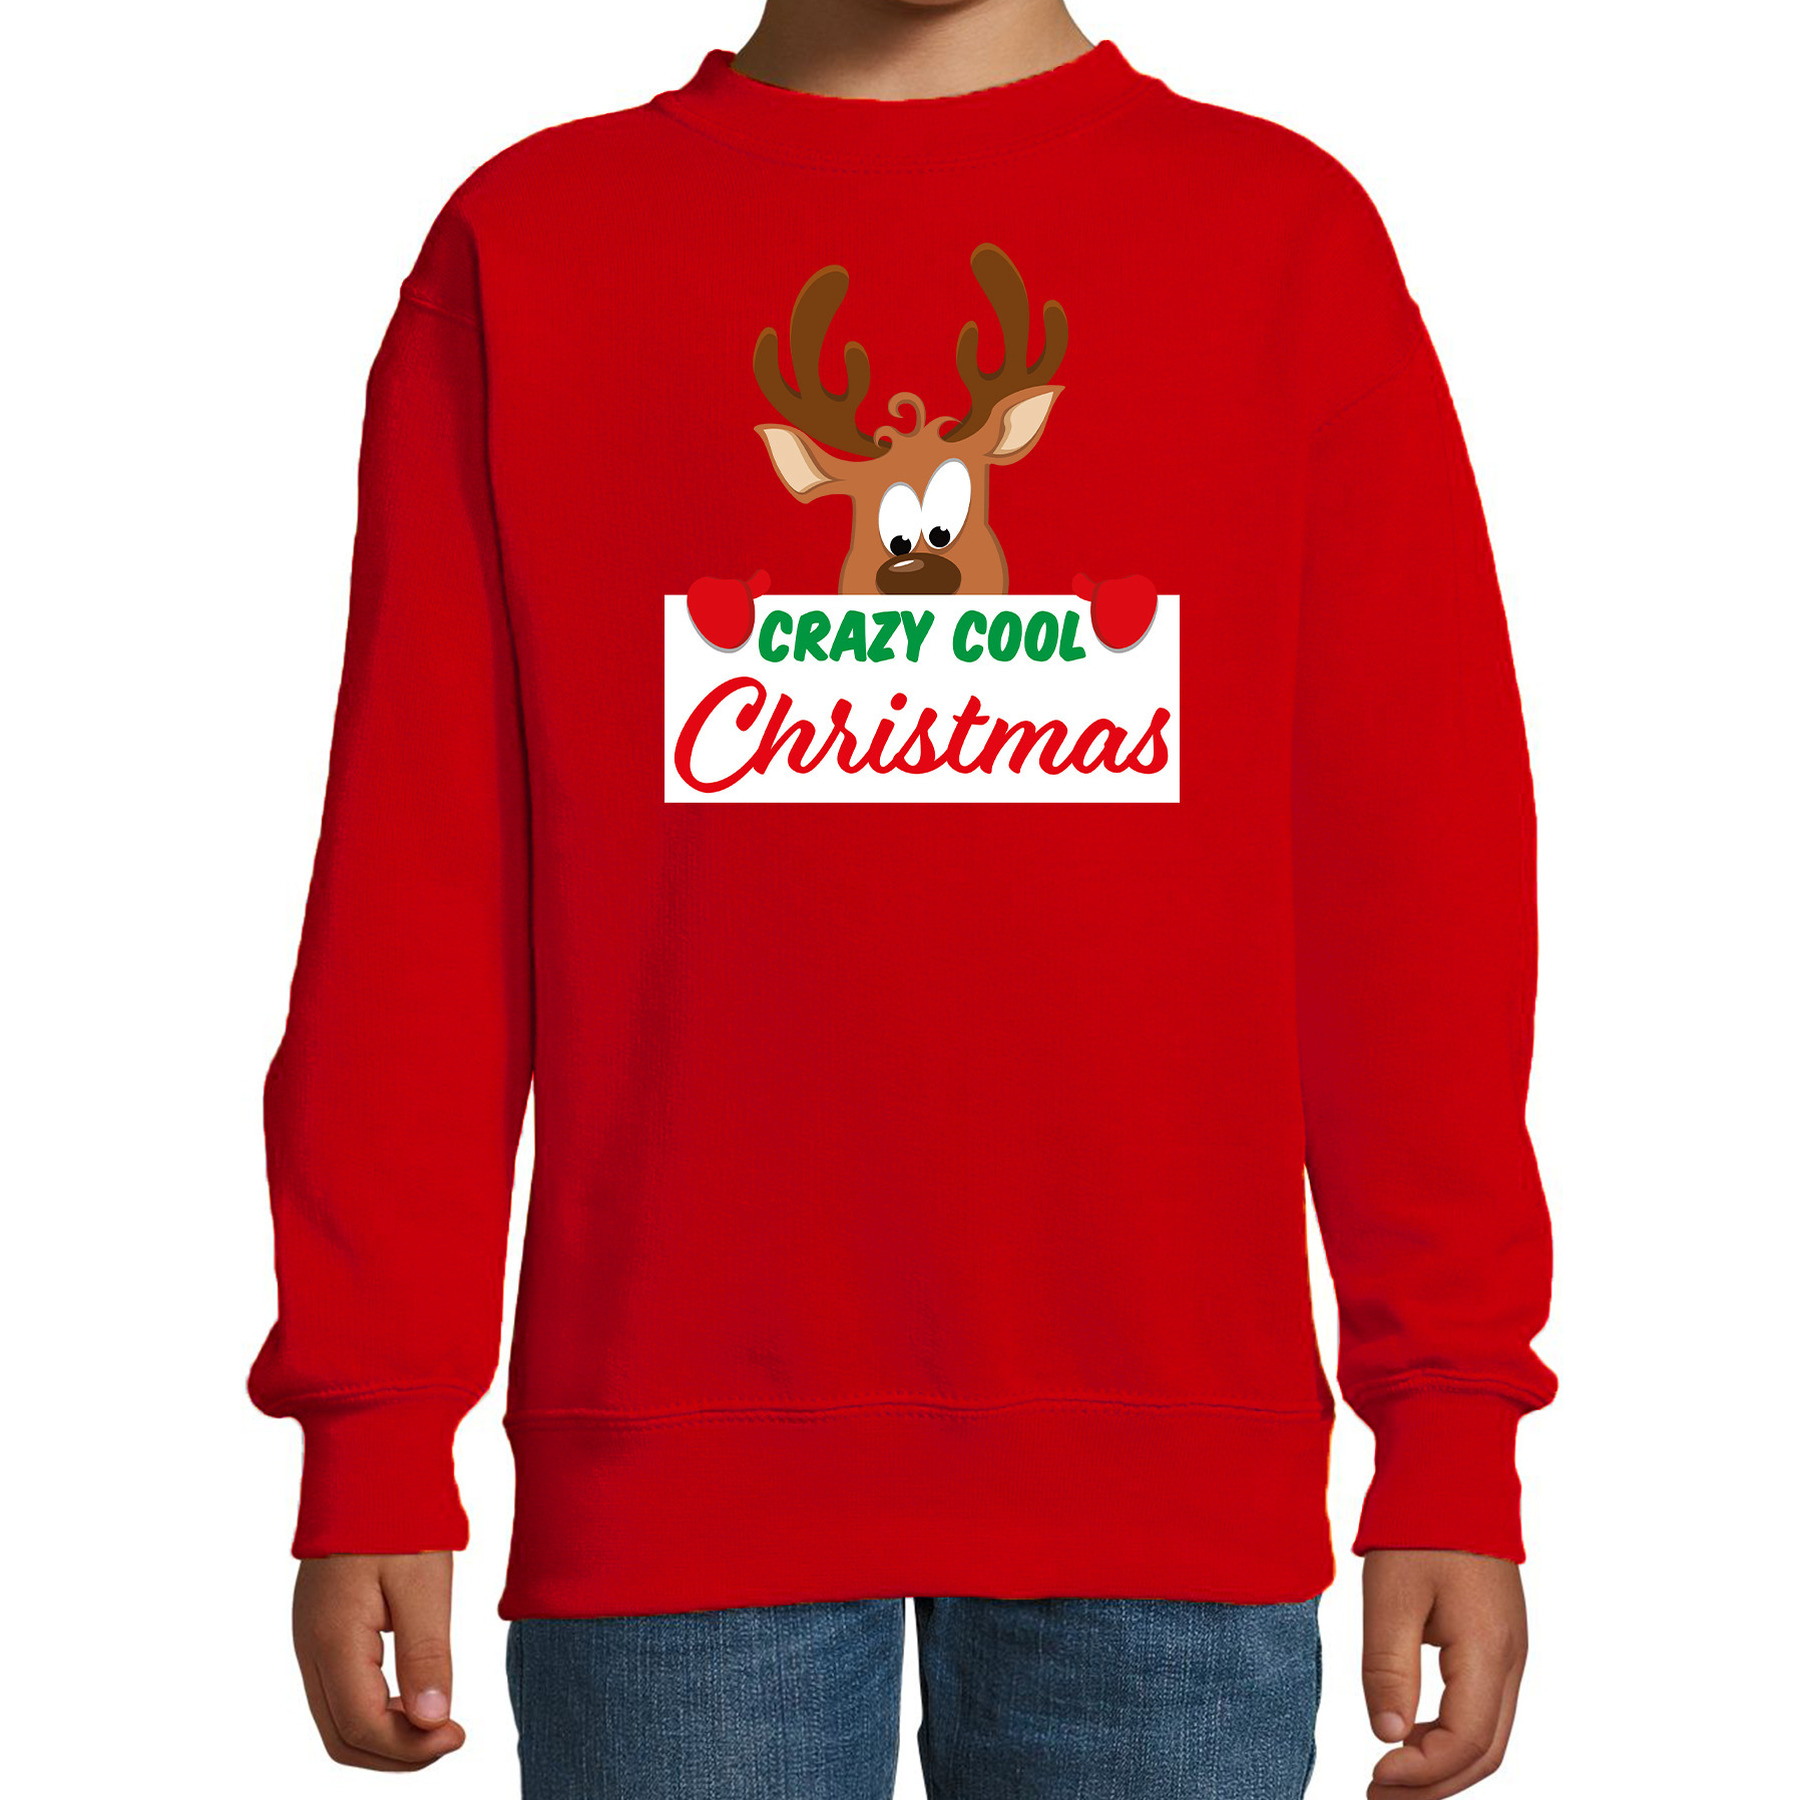 Crazy cool Christmas Kerstsweater - Kersttrui rood voor kinderen